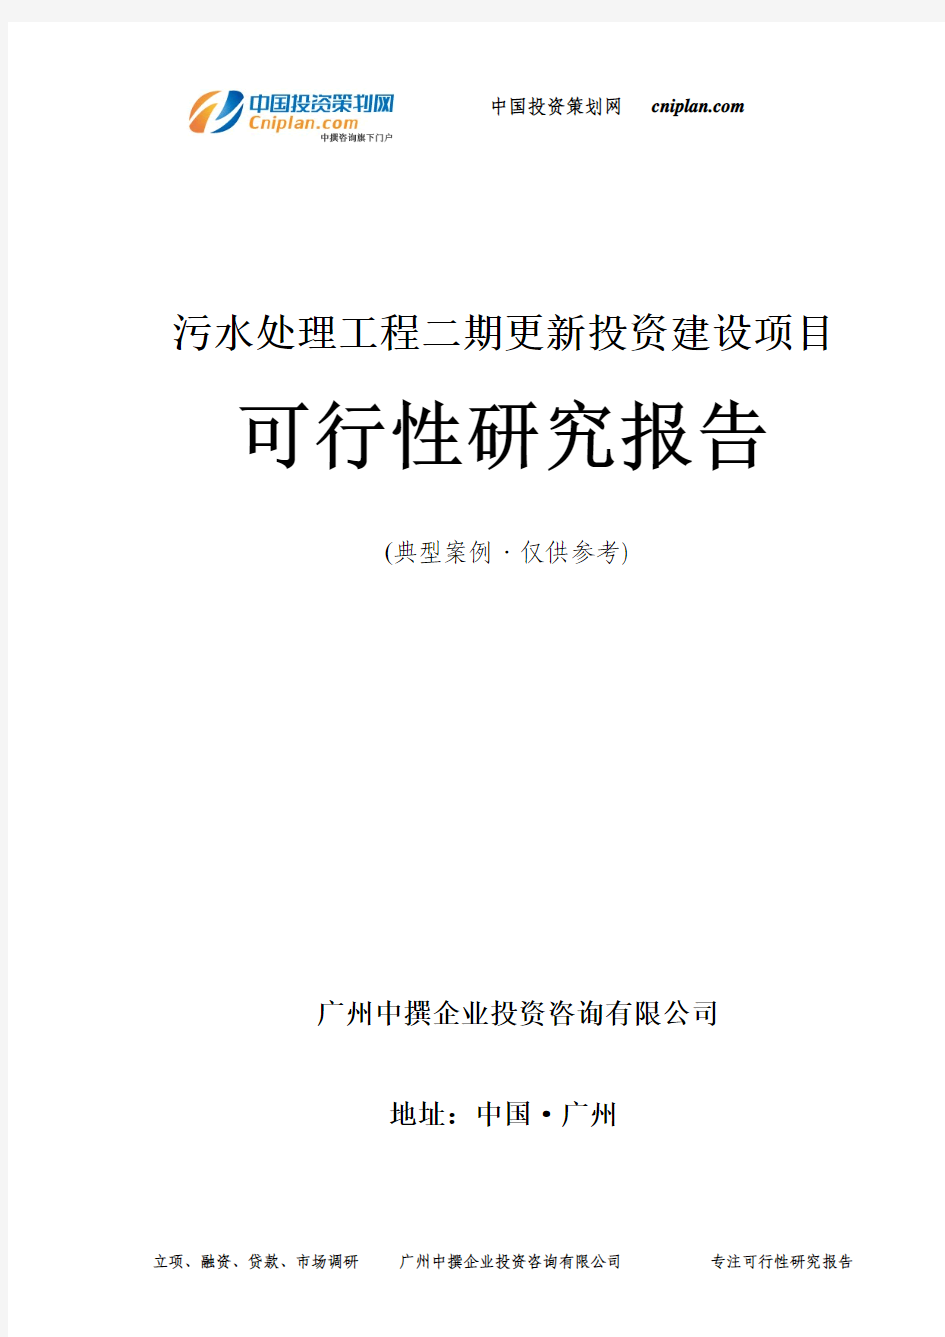 污水处理工程二期更新投资建设项目可行性研究报告-广州中撰咨询